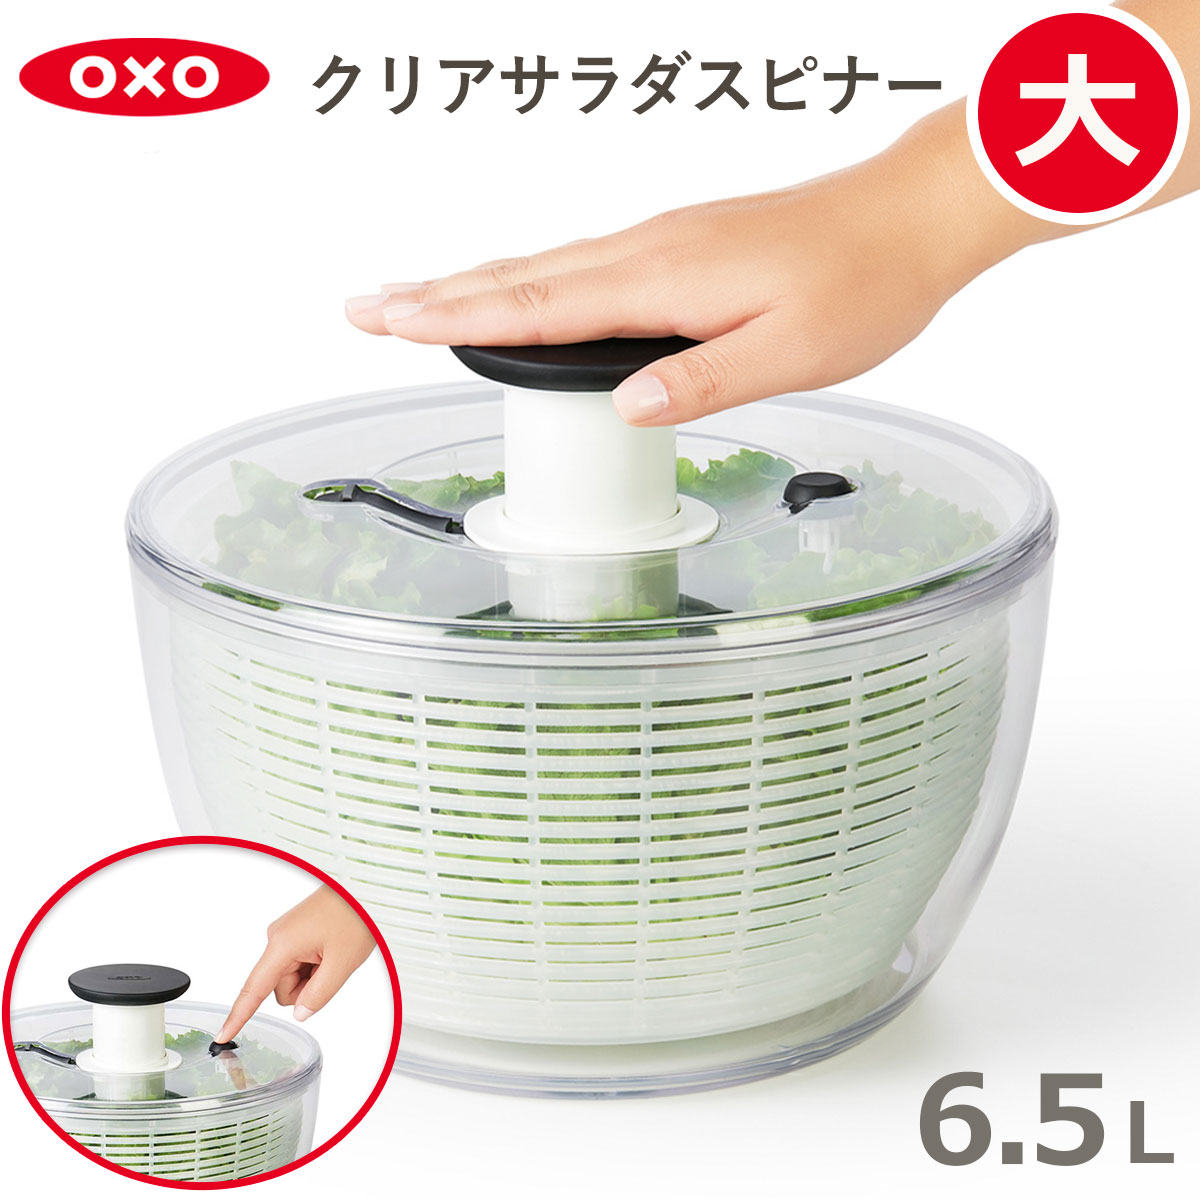 オクソー 野菜水切り器 クリアサラダスピナー(大) 食洗器対応